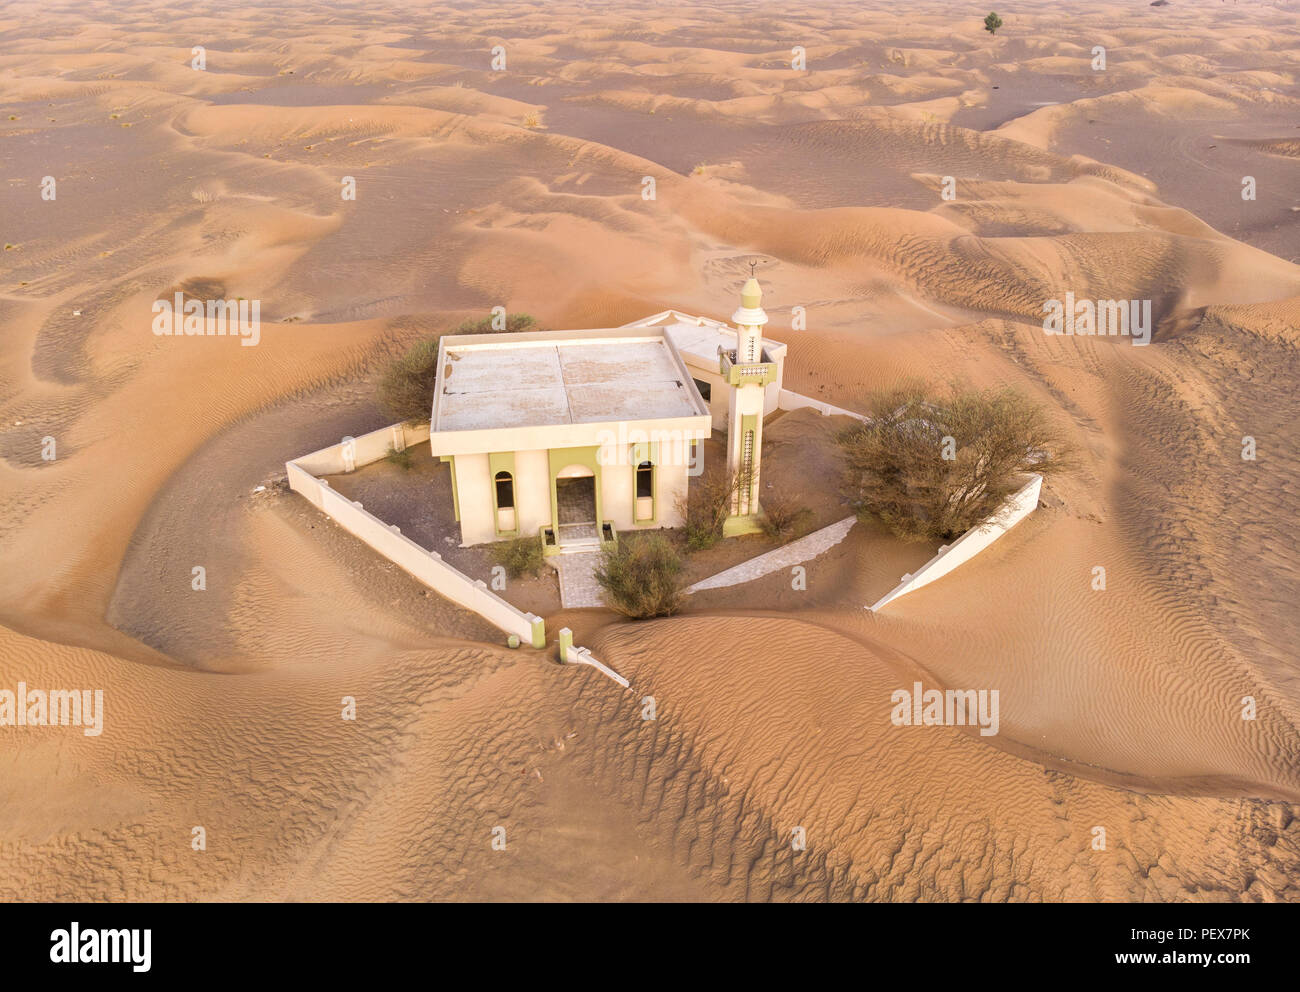 La moschea abbandonati in un deserto, rischia di essere superato da sabbia Foto Stock